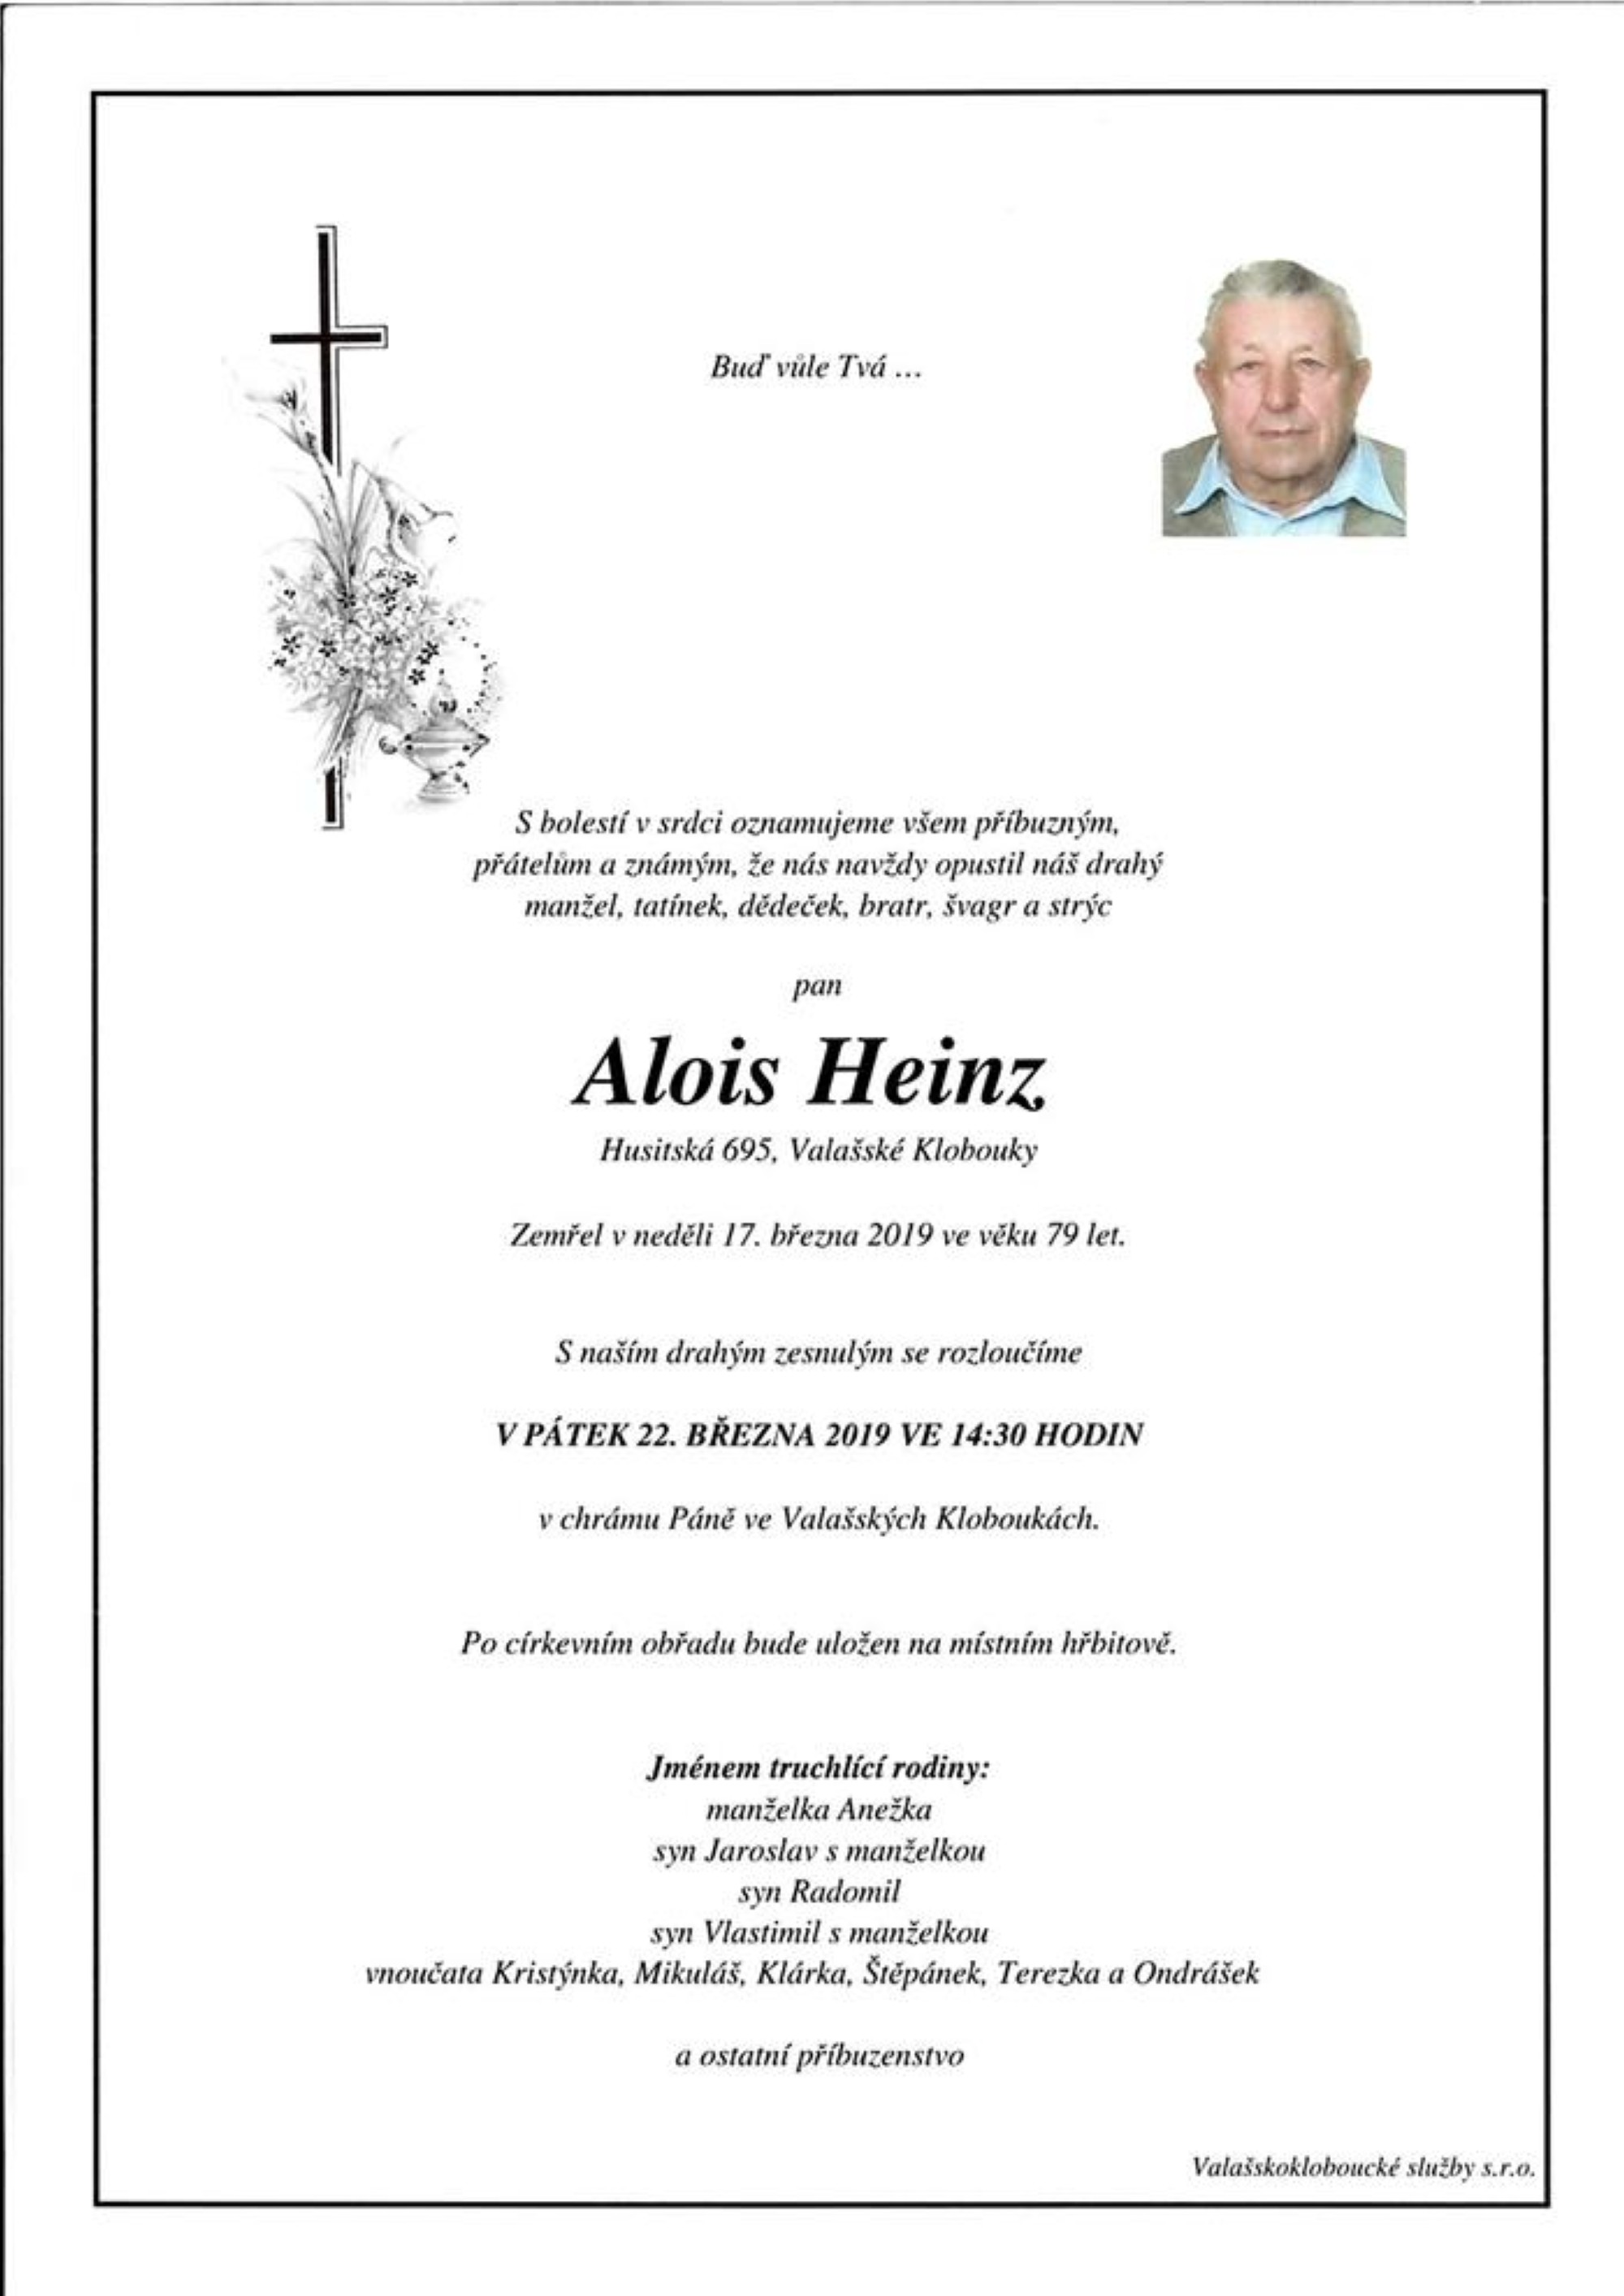 Alois Heinz